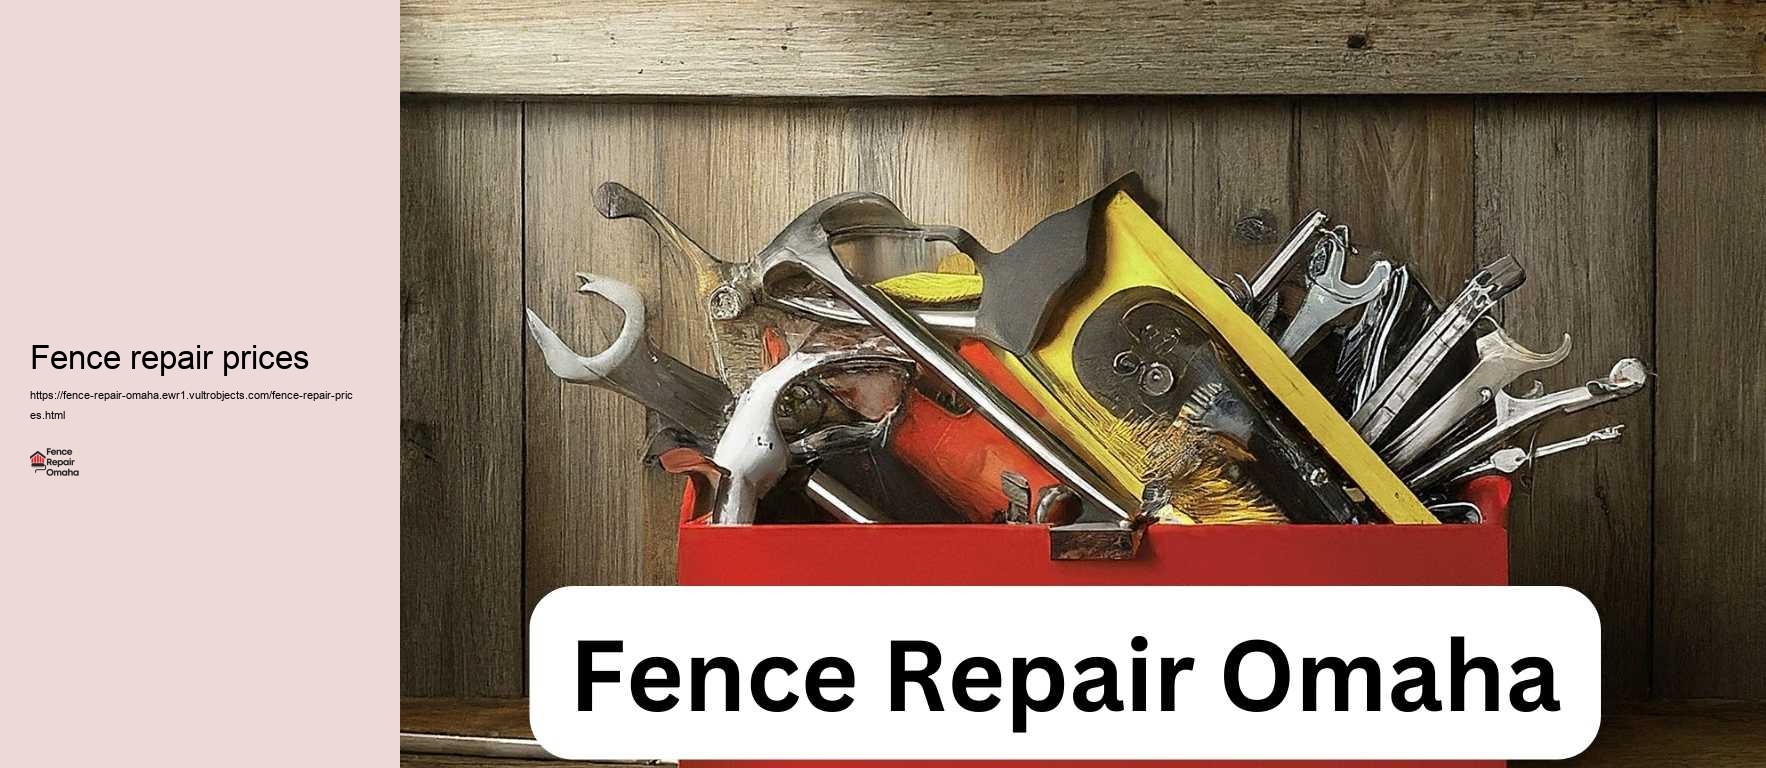 Fence repair prices